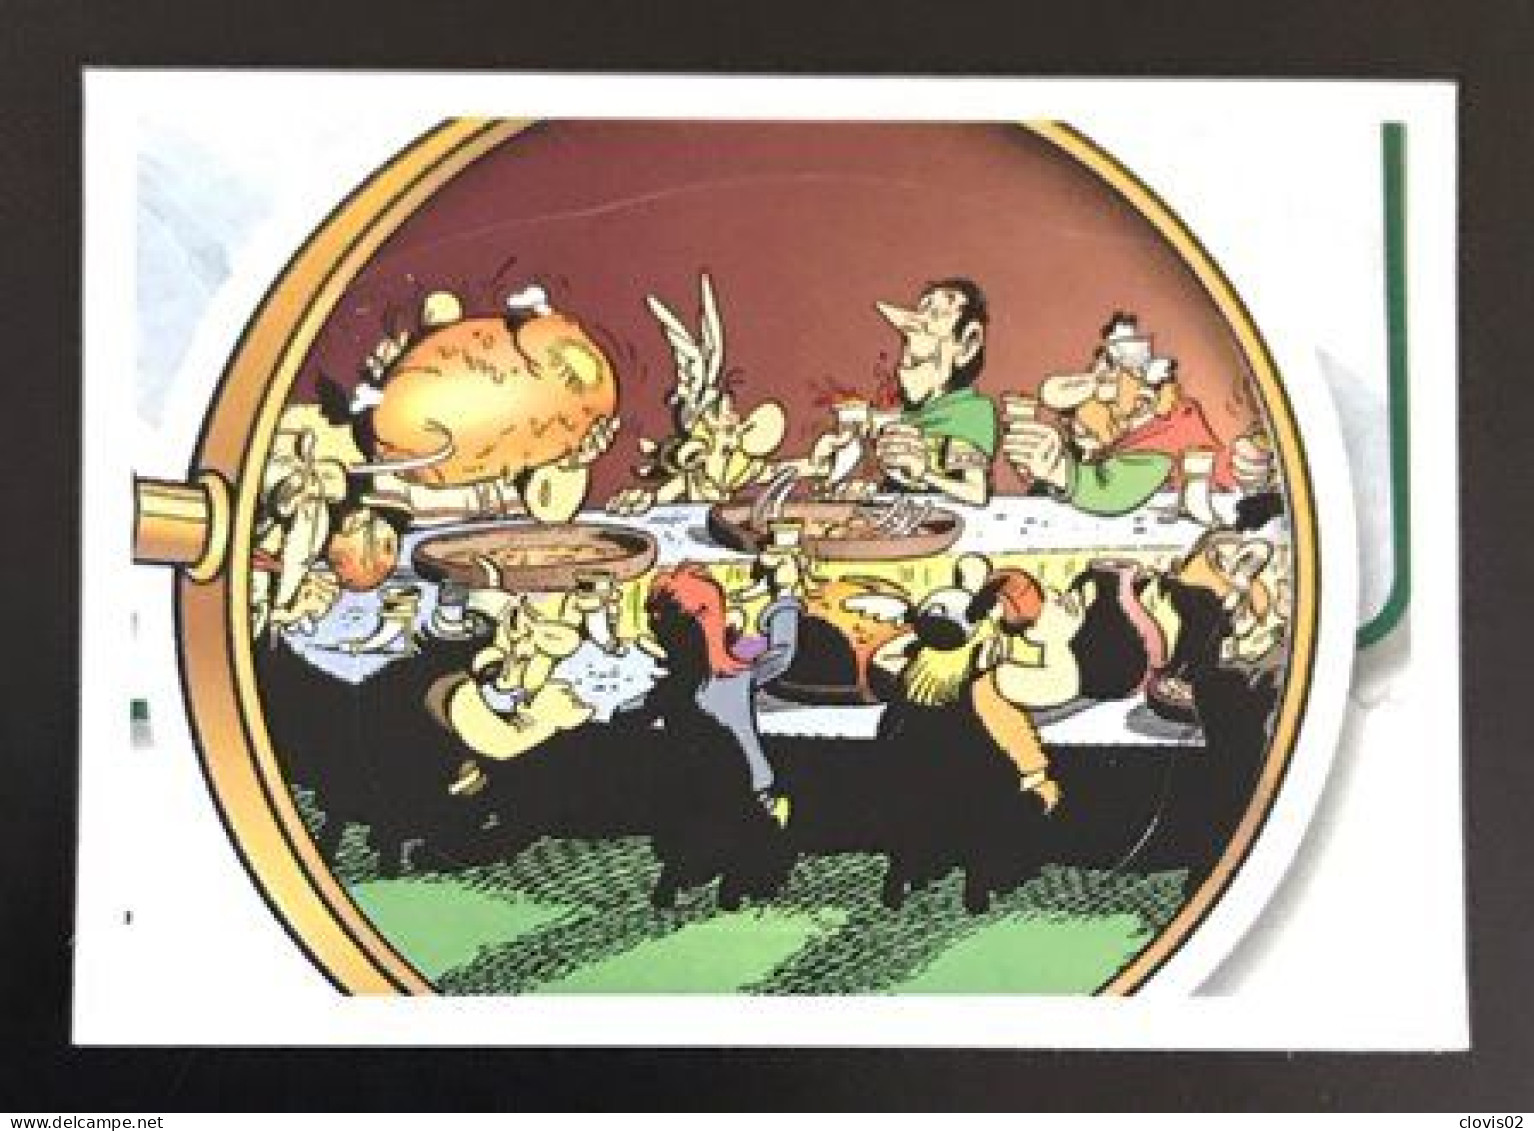 73 - PANINI Family Astérix 60 Ans D'aventures - Carrefour Sticker Vignette - Edizione Francese